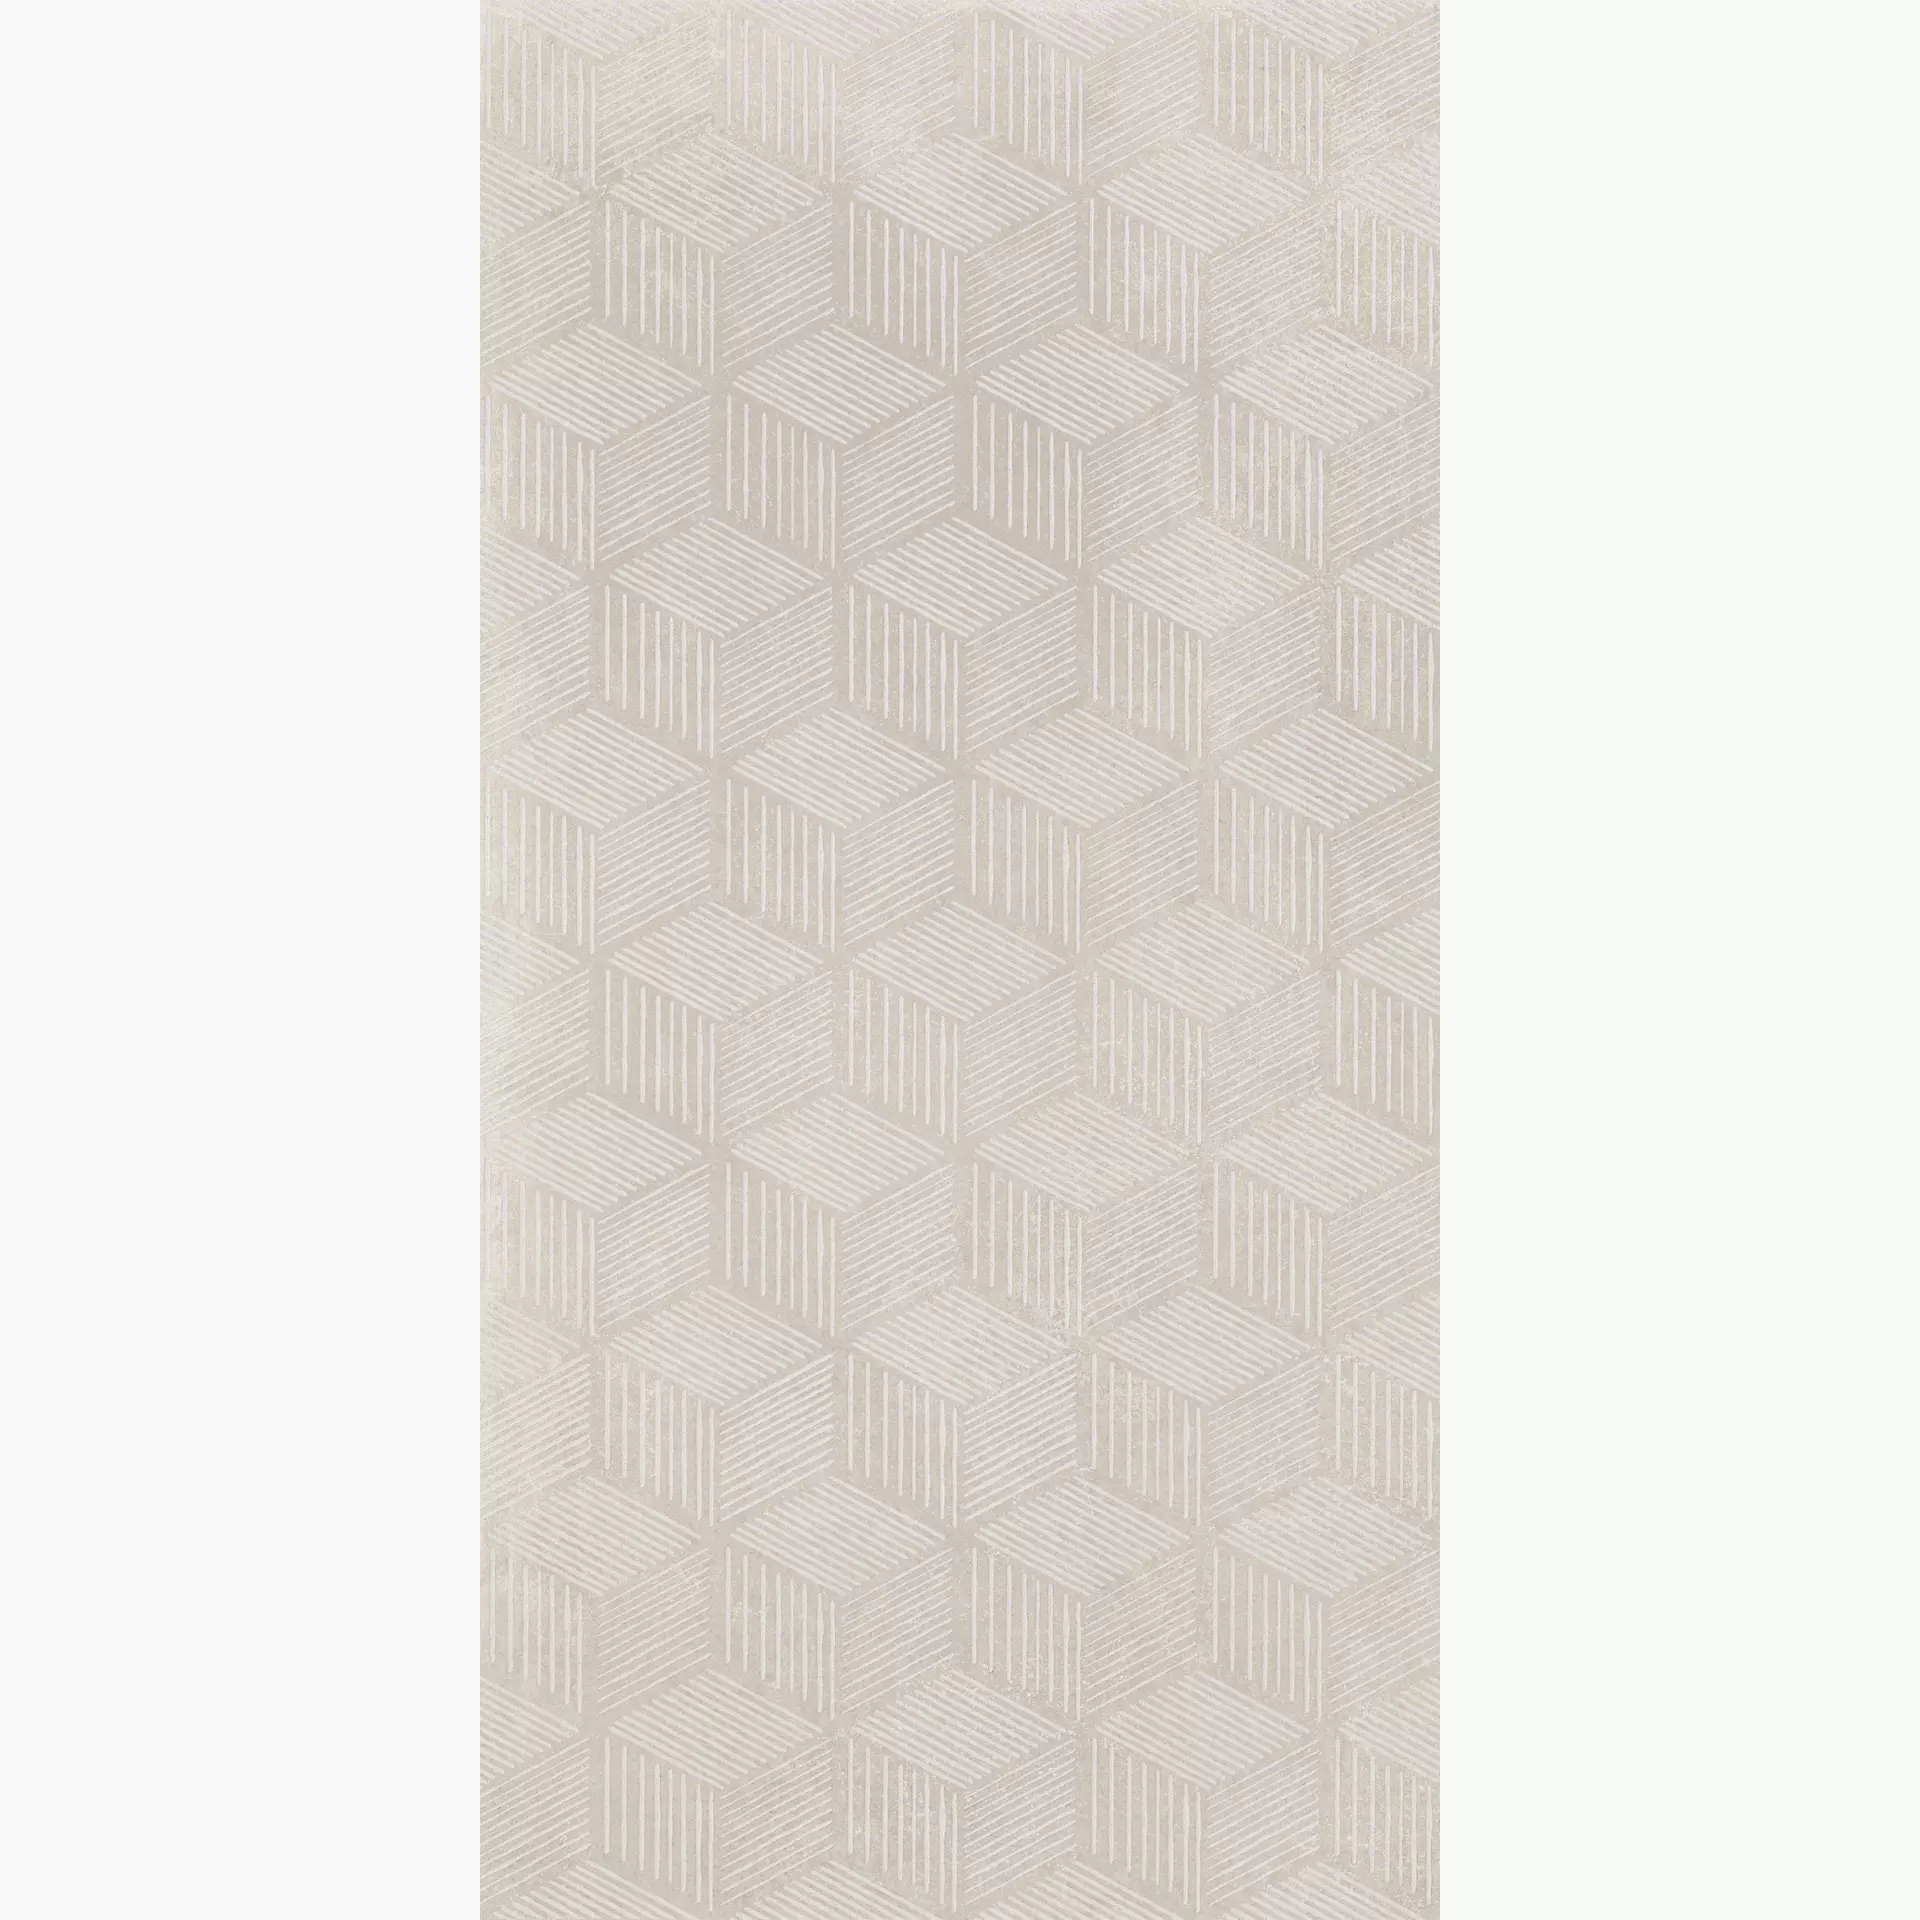 KRONOS Prima Materia Cenere Naturale Cenere 8207 natur 60x120cm Hexagon 9mm